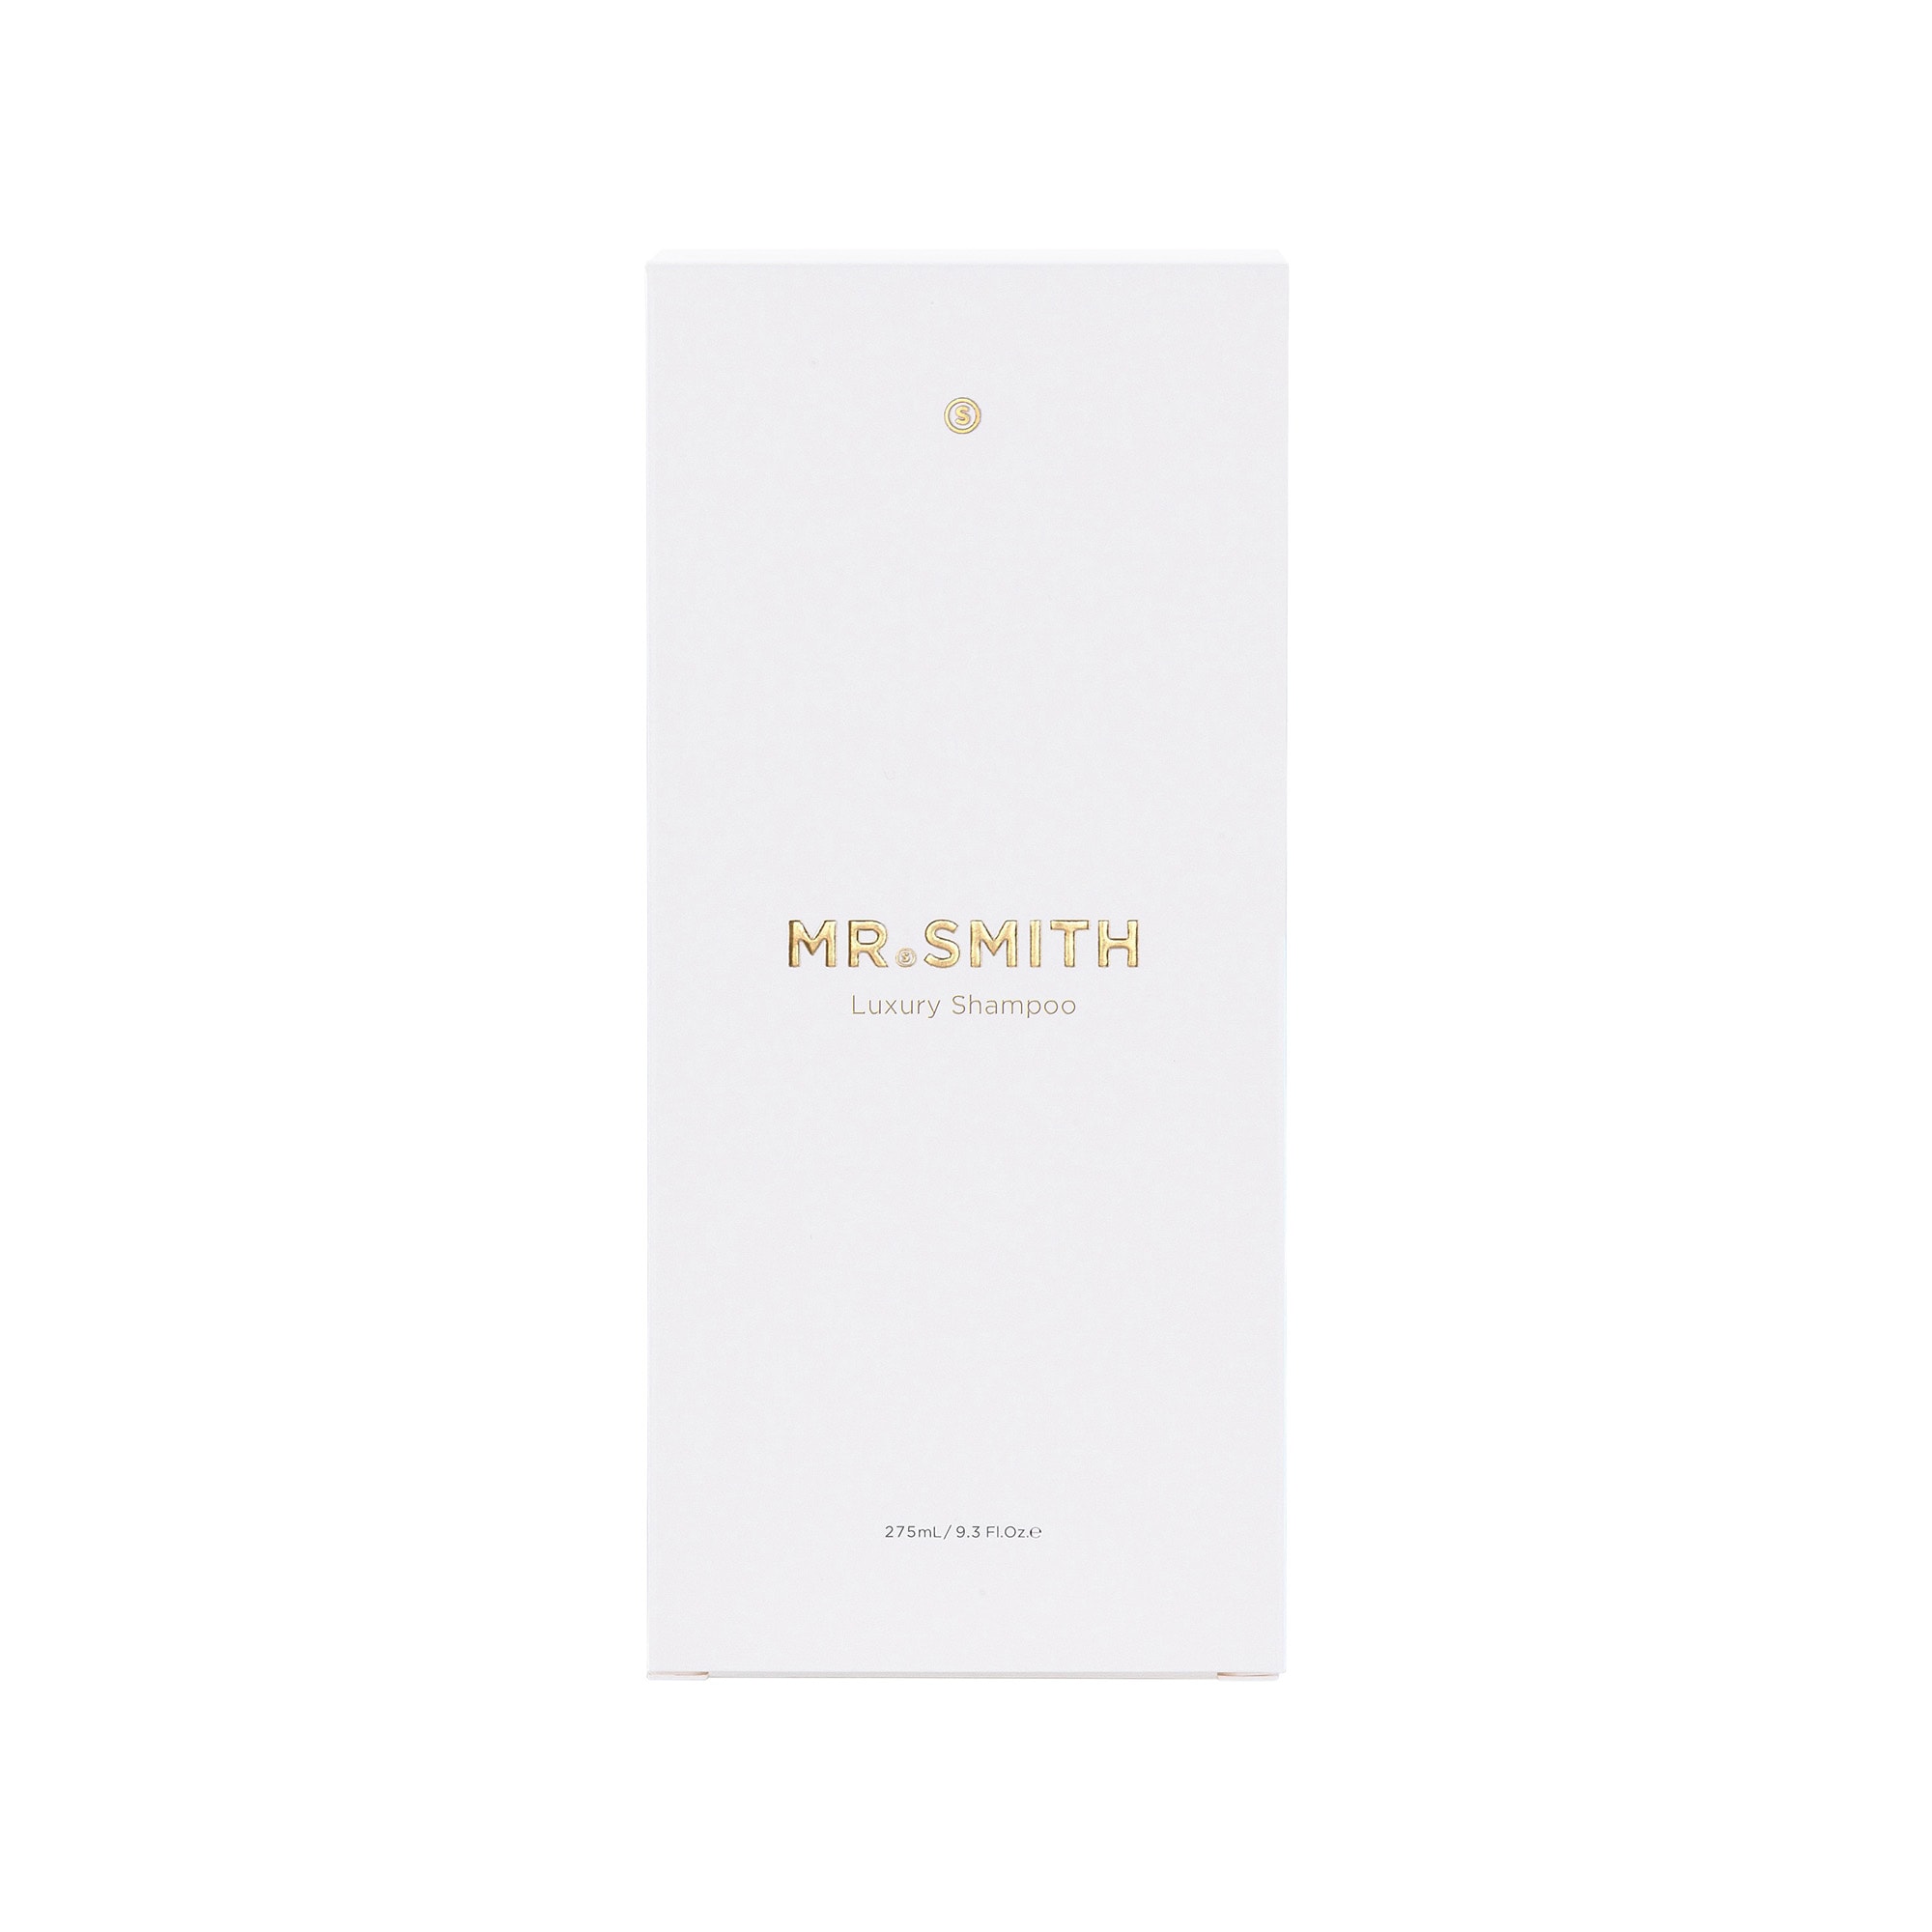 Mr. Smith Swatch Luxury Shampoo Carton